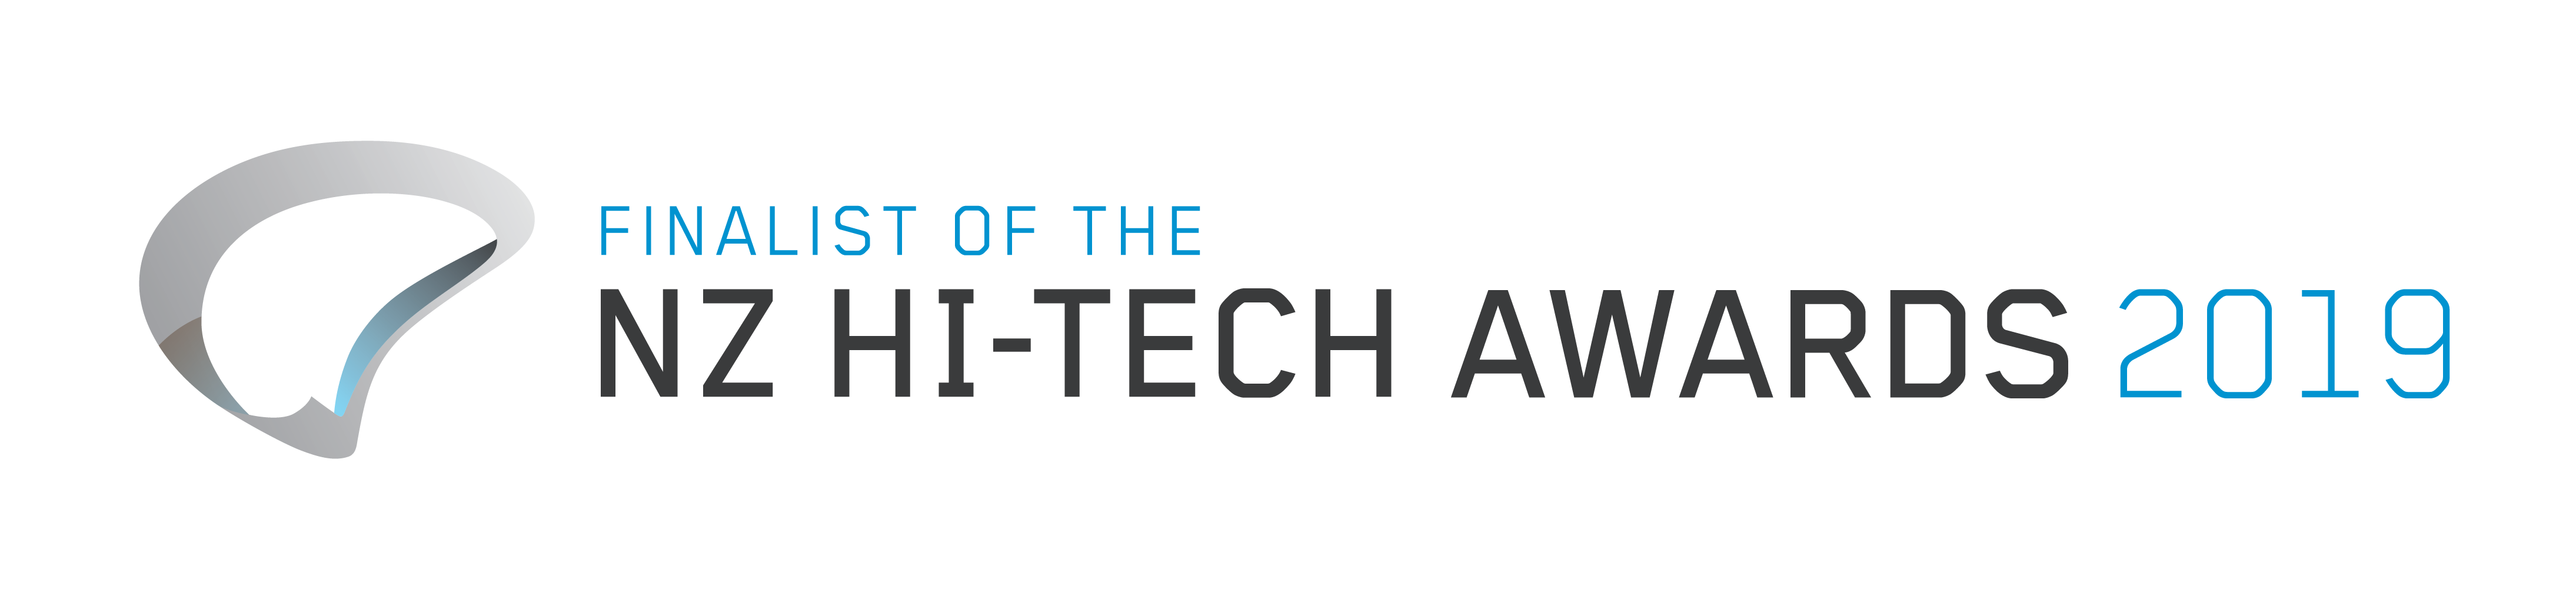 Hi-tech Awards 2019